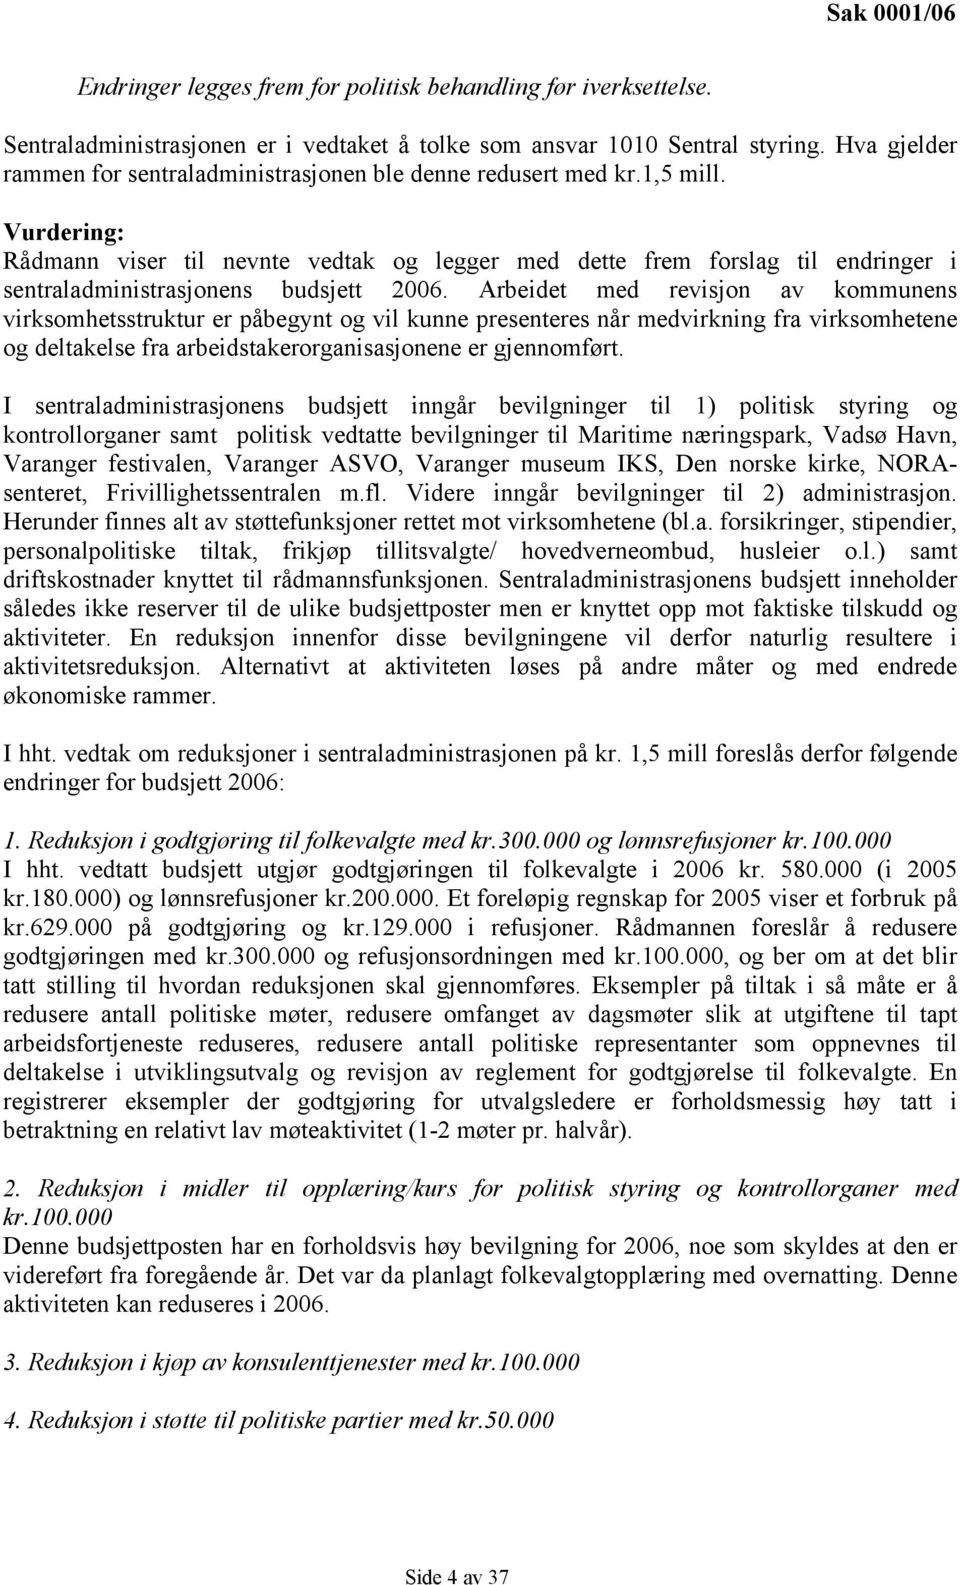 Vurdering: Rådmann viser til nevnte vedtak og legger med dette frem forslag til endringer i sentraladministrasjonens budsjett 2006.